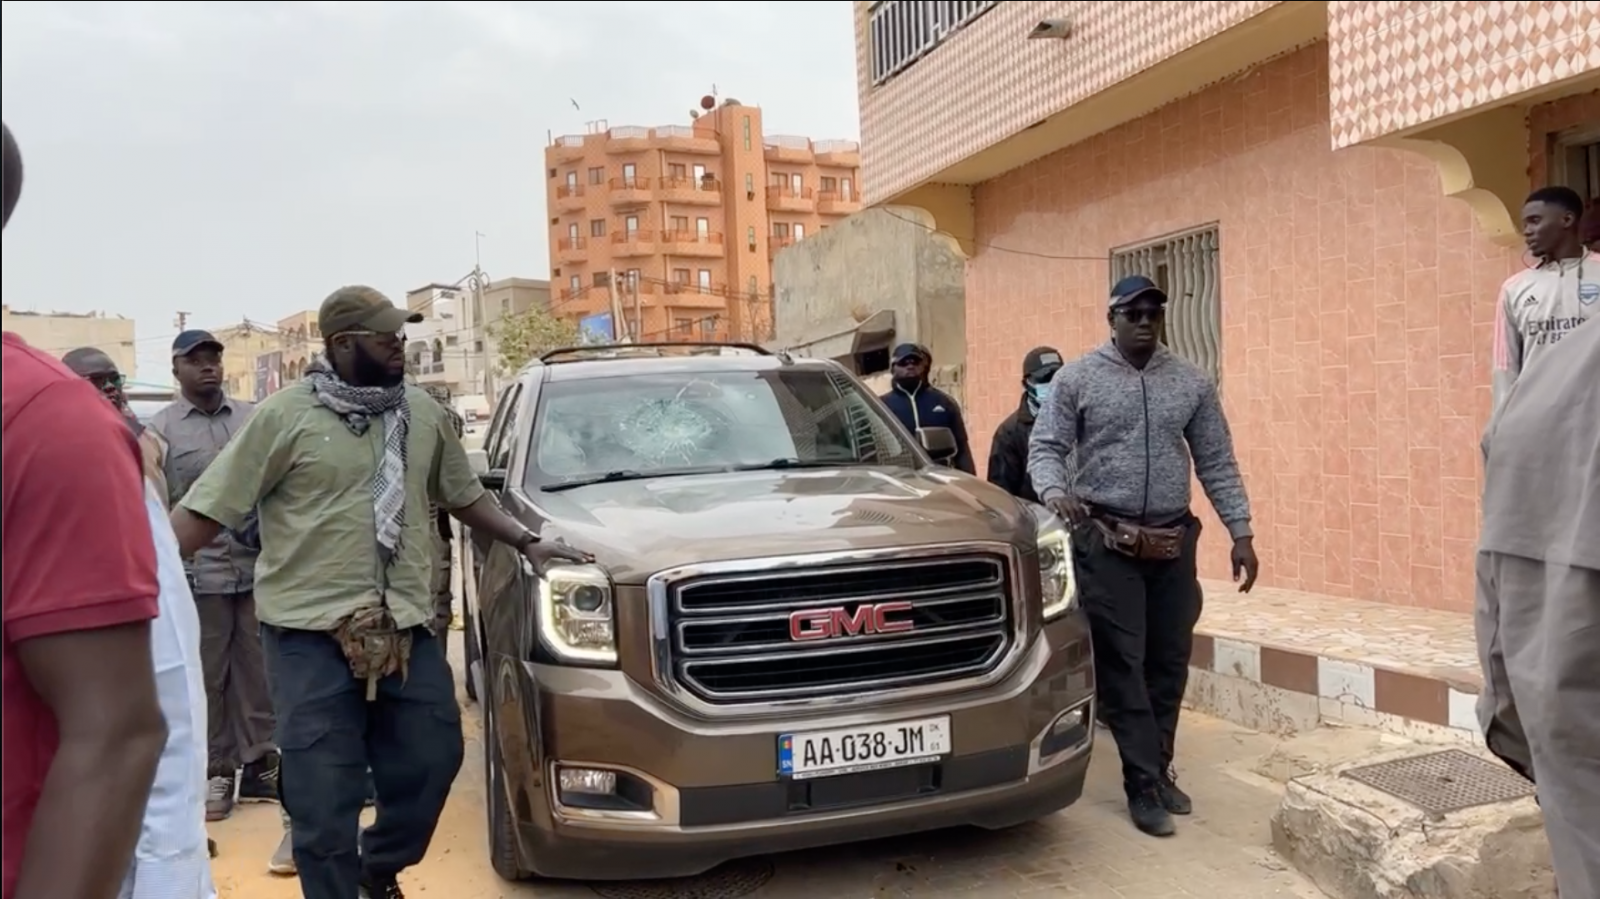 Némékou Tour à Taiba Ndiaye : 8 personnes interpellées, le convoi de Sonko gazé